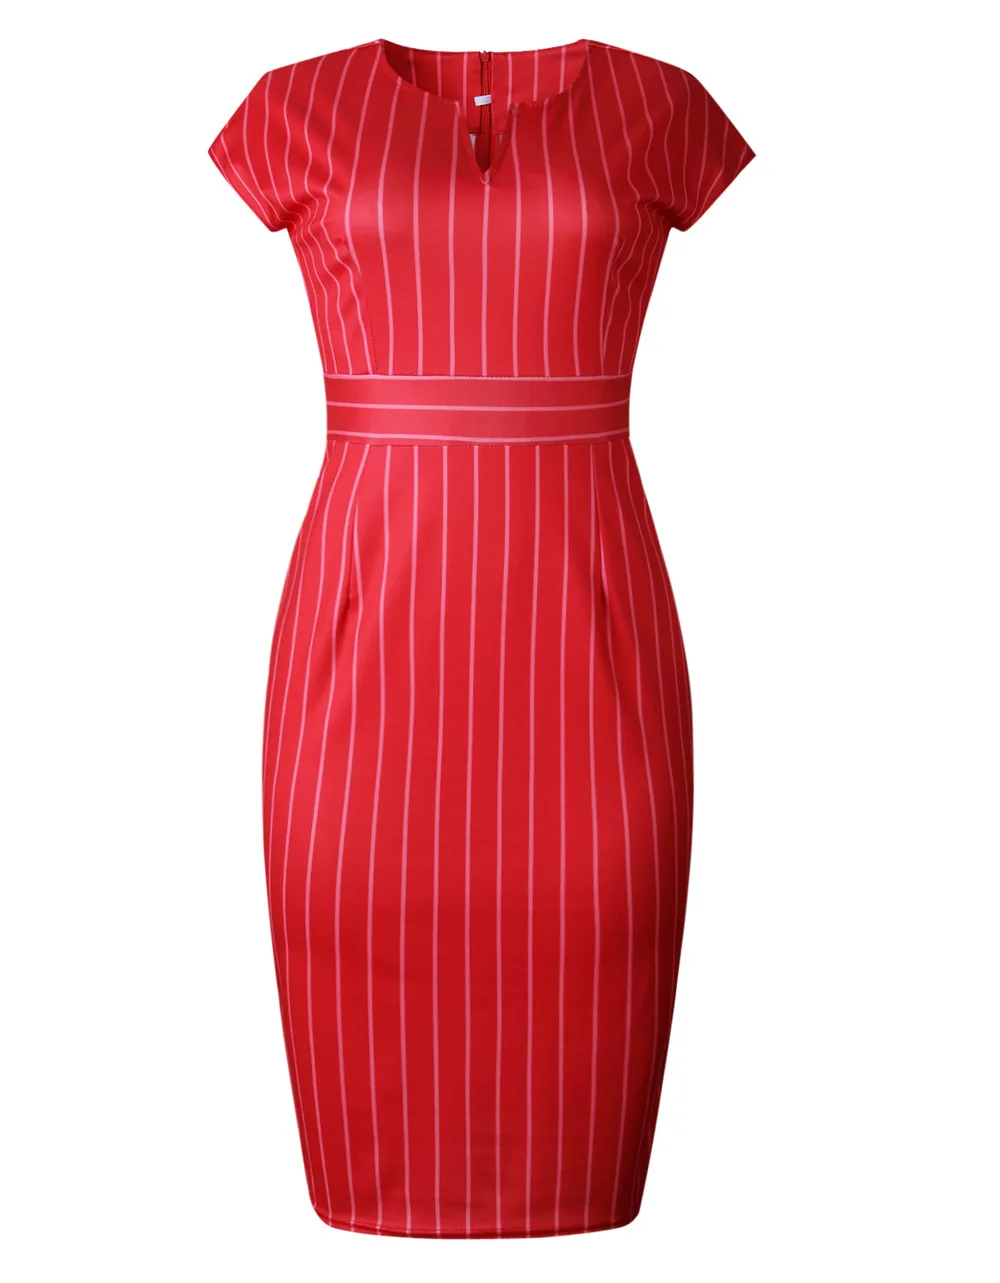 HGTE офисное женское платье в красную полоску, женское облегающее винтажное платье с разрезом сзади и высокой талией, летнее женское платье-карандаш миди с коротким рукавом